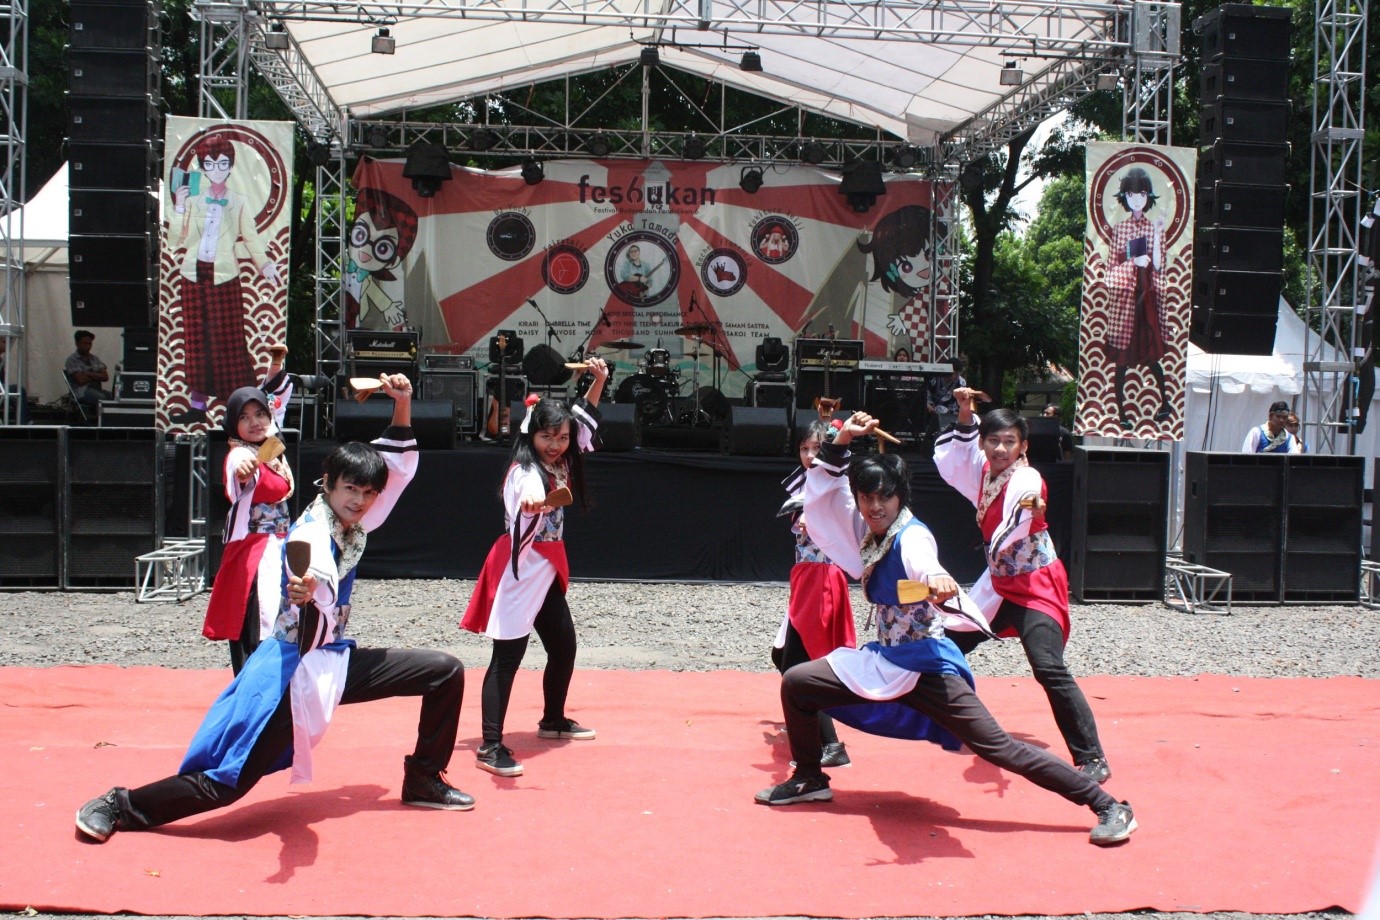 Yuk dukung Hana-B Yosakoi Team memperkenalkan budaya Sunda ke Jepang